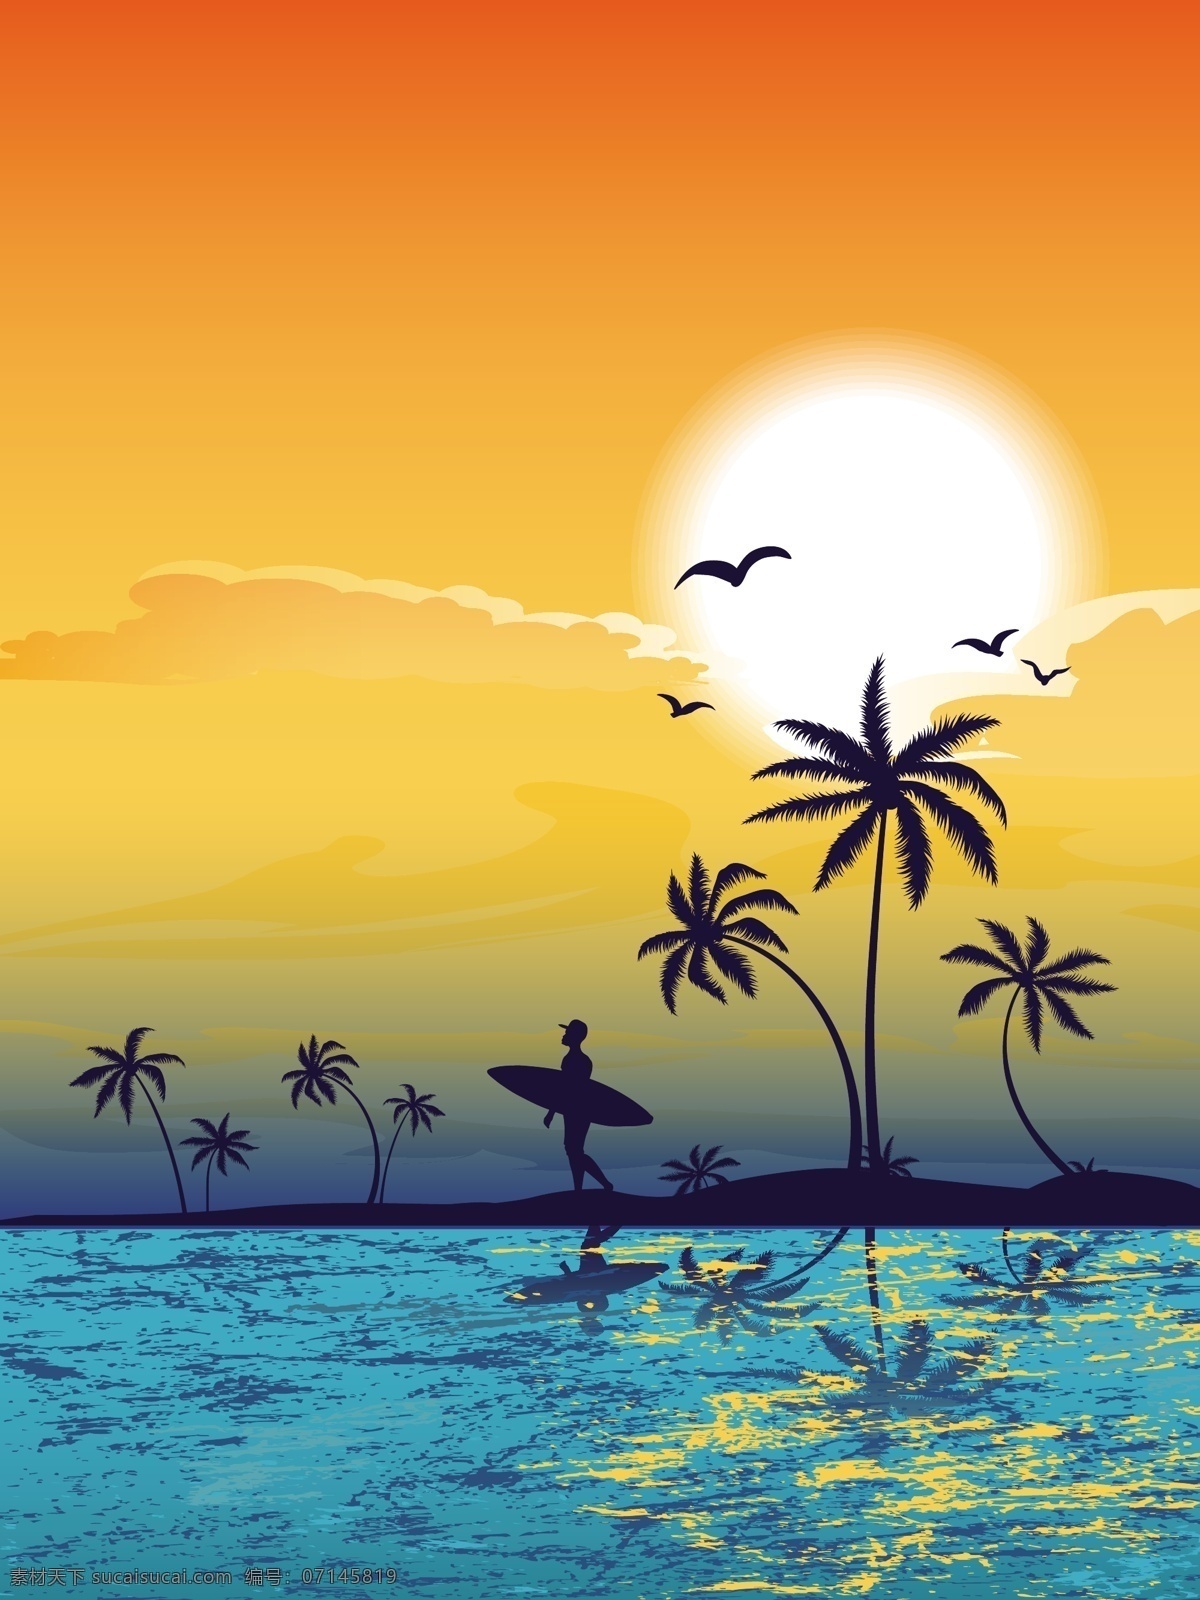 时尚 海滩 风景 插画 夏日海滩风景 椰树 椰树插画 夏日主题插画 自然风光 空间环境 矢量素材 橙色